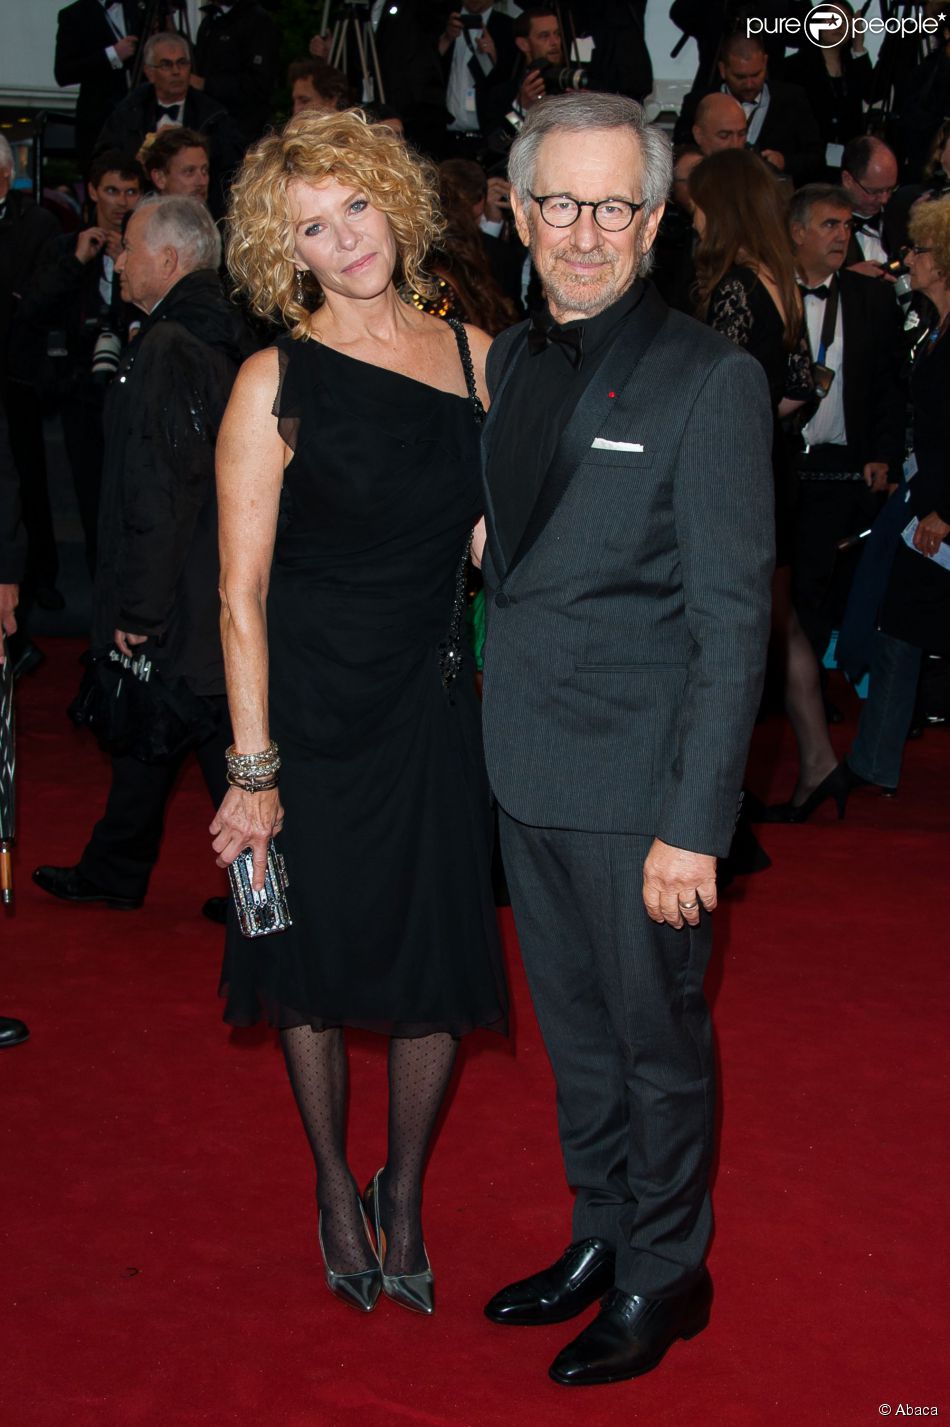 Steven Spielberg e sua mulher, a atriz Kate Capshaw, comparecem a diversos eventos sociais juntos. O casal posou no Festival de Cannes de 2013, que foi apresentado pelo diretor e produtor